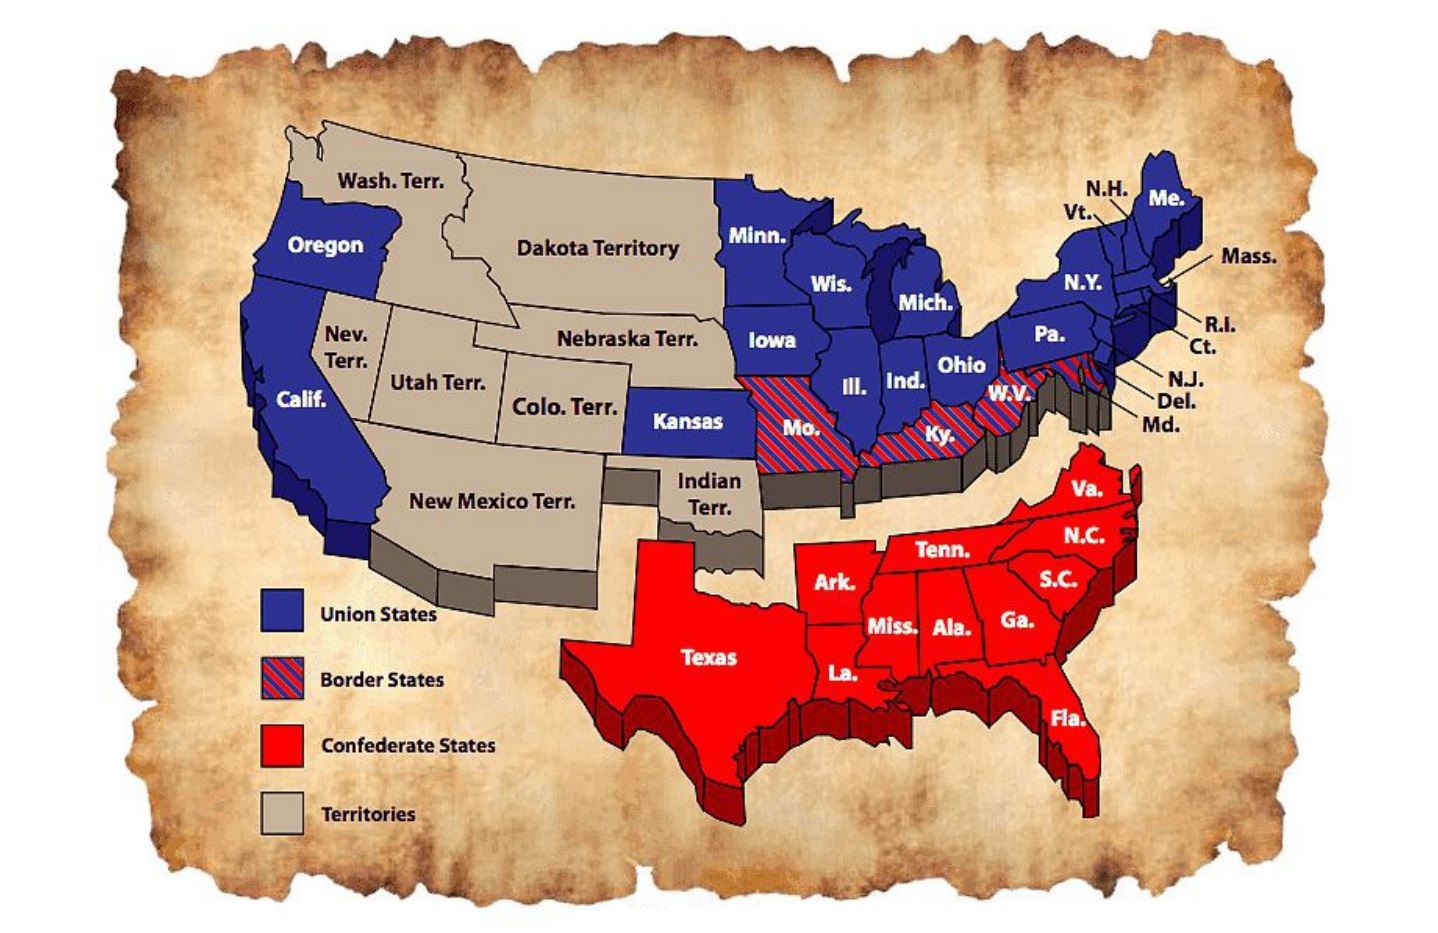 U.S Civil War Map state wise